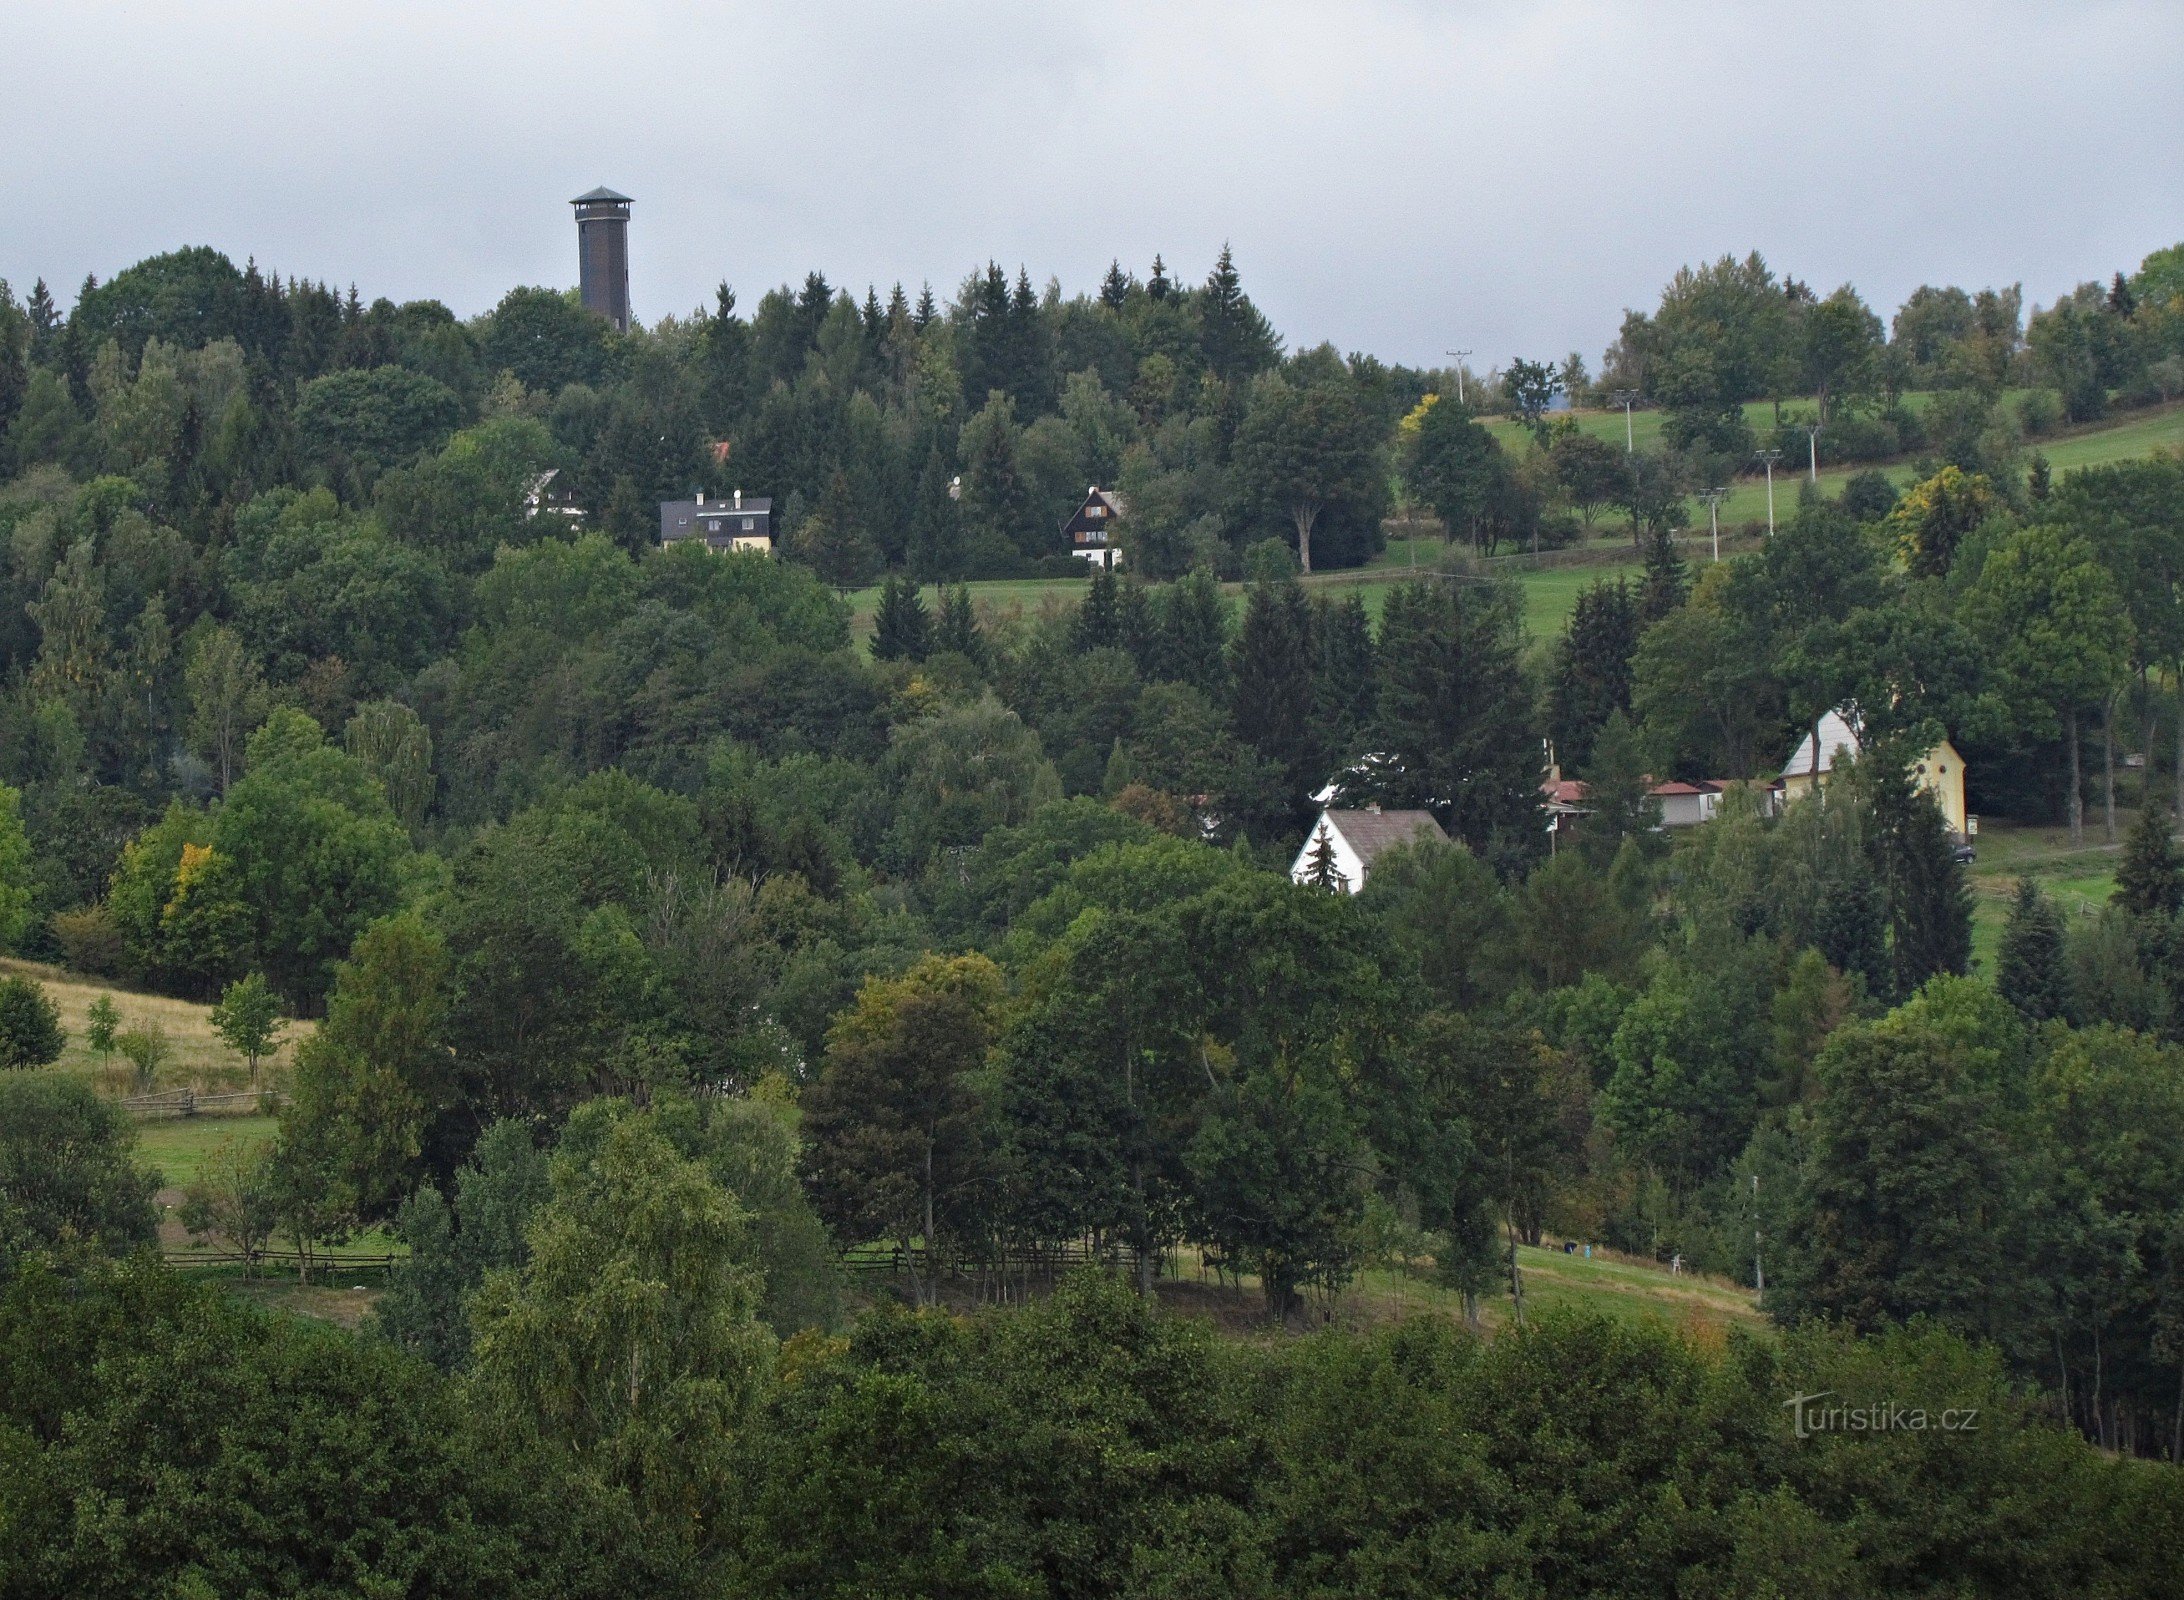 Nová Ves - περιοχή του πύργου και εξοχικής κατοικίας Na Vyhlídke